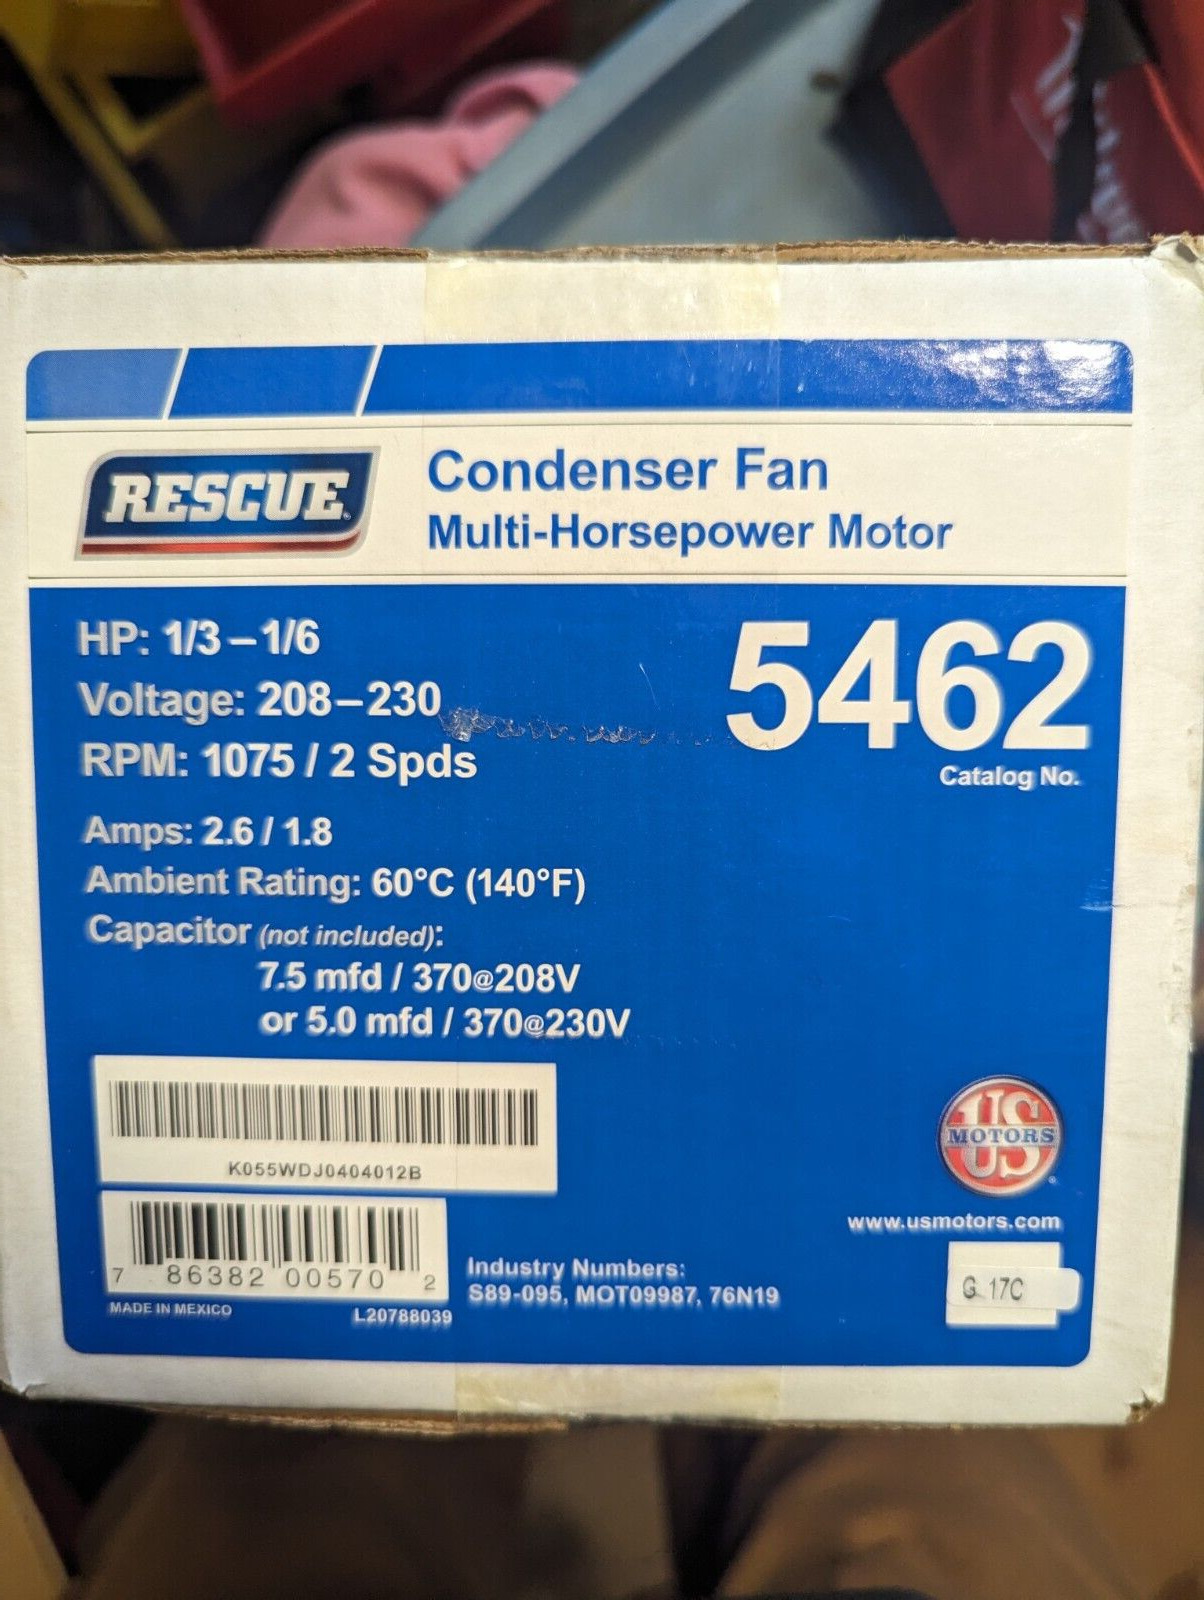 OEM NEW Rescue 5462 Condenser Fan Multi-Horsepower Motor 1/3-1/6HP, 208-230V